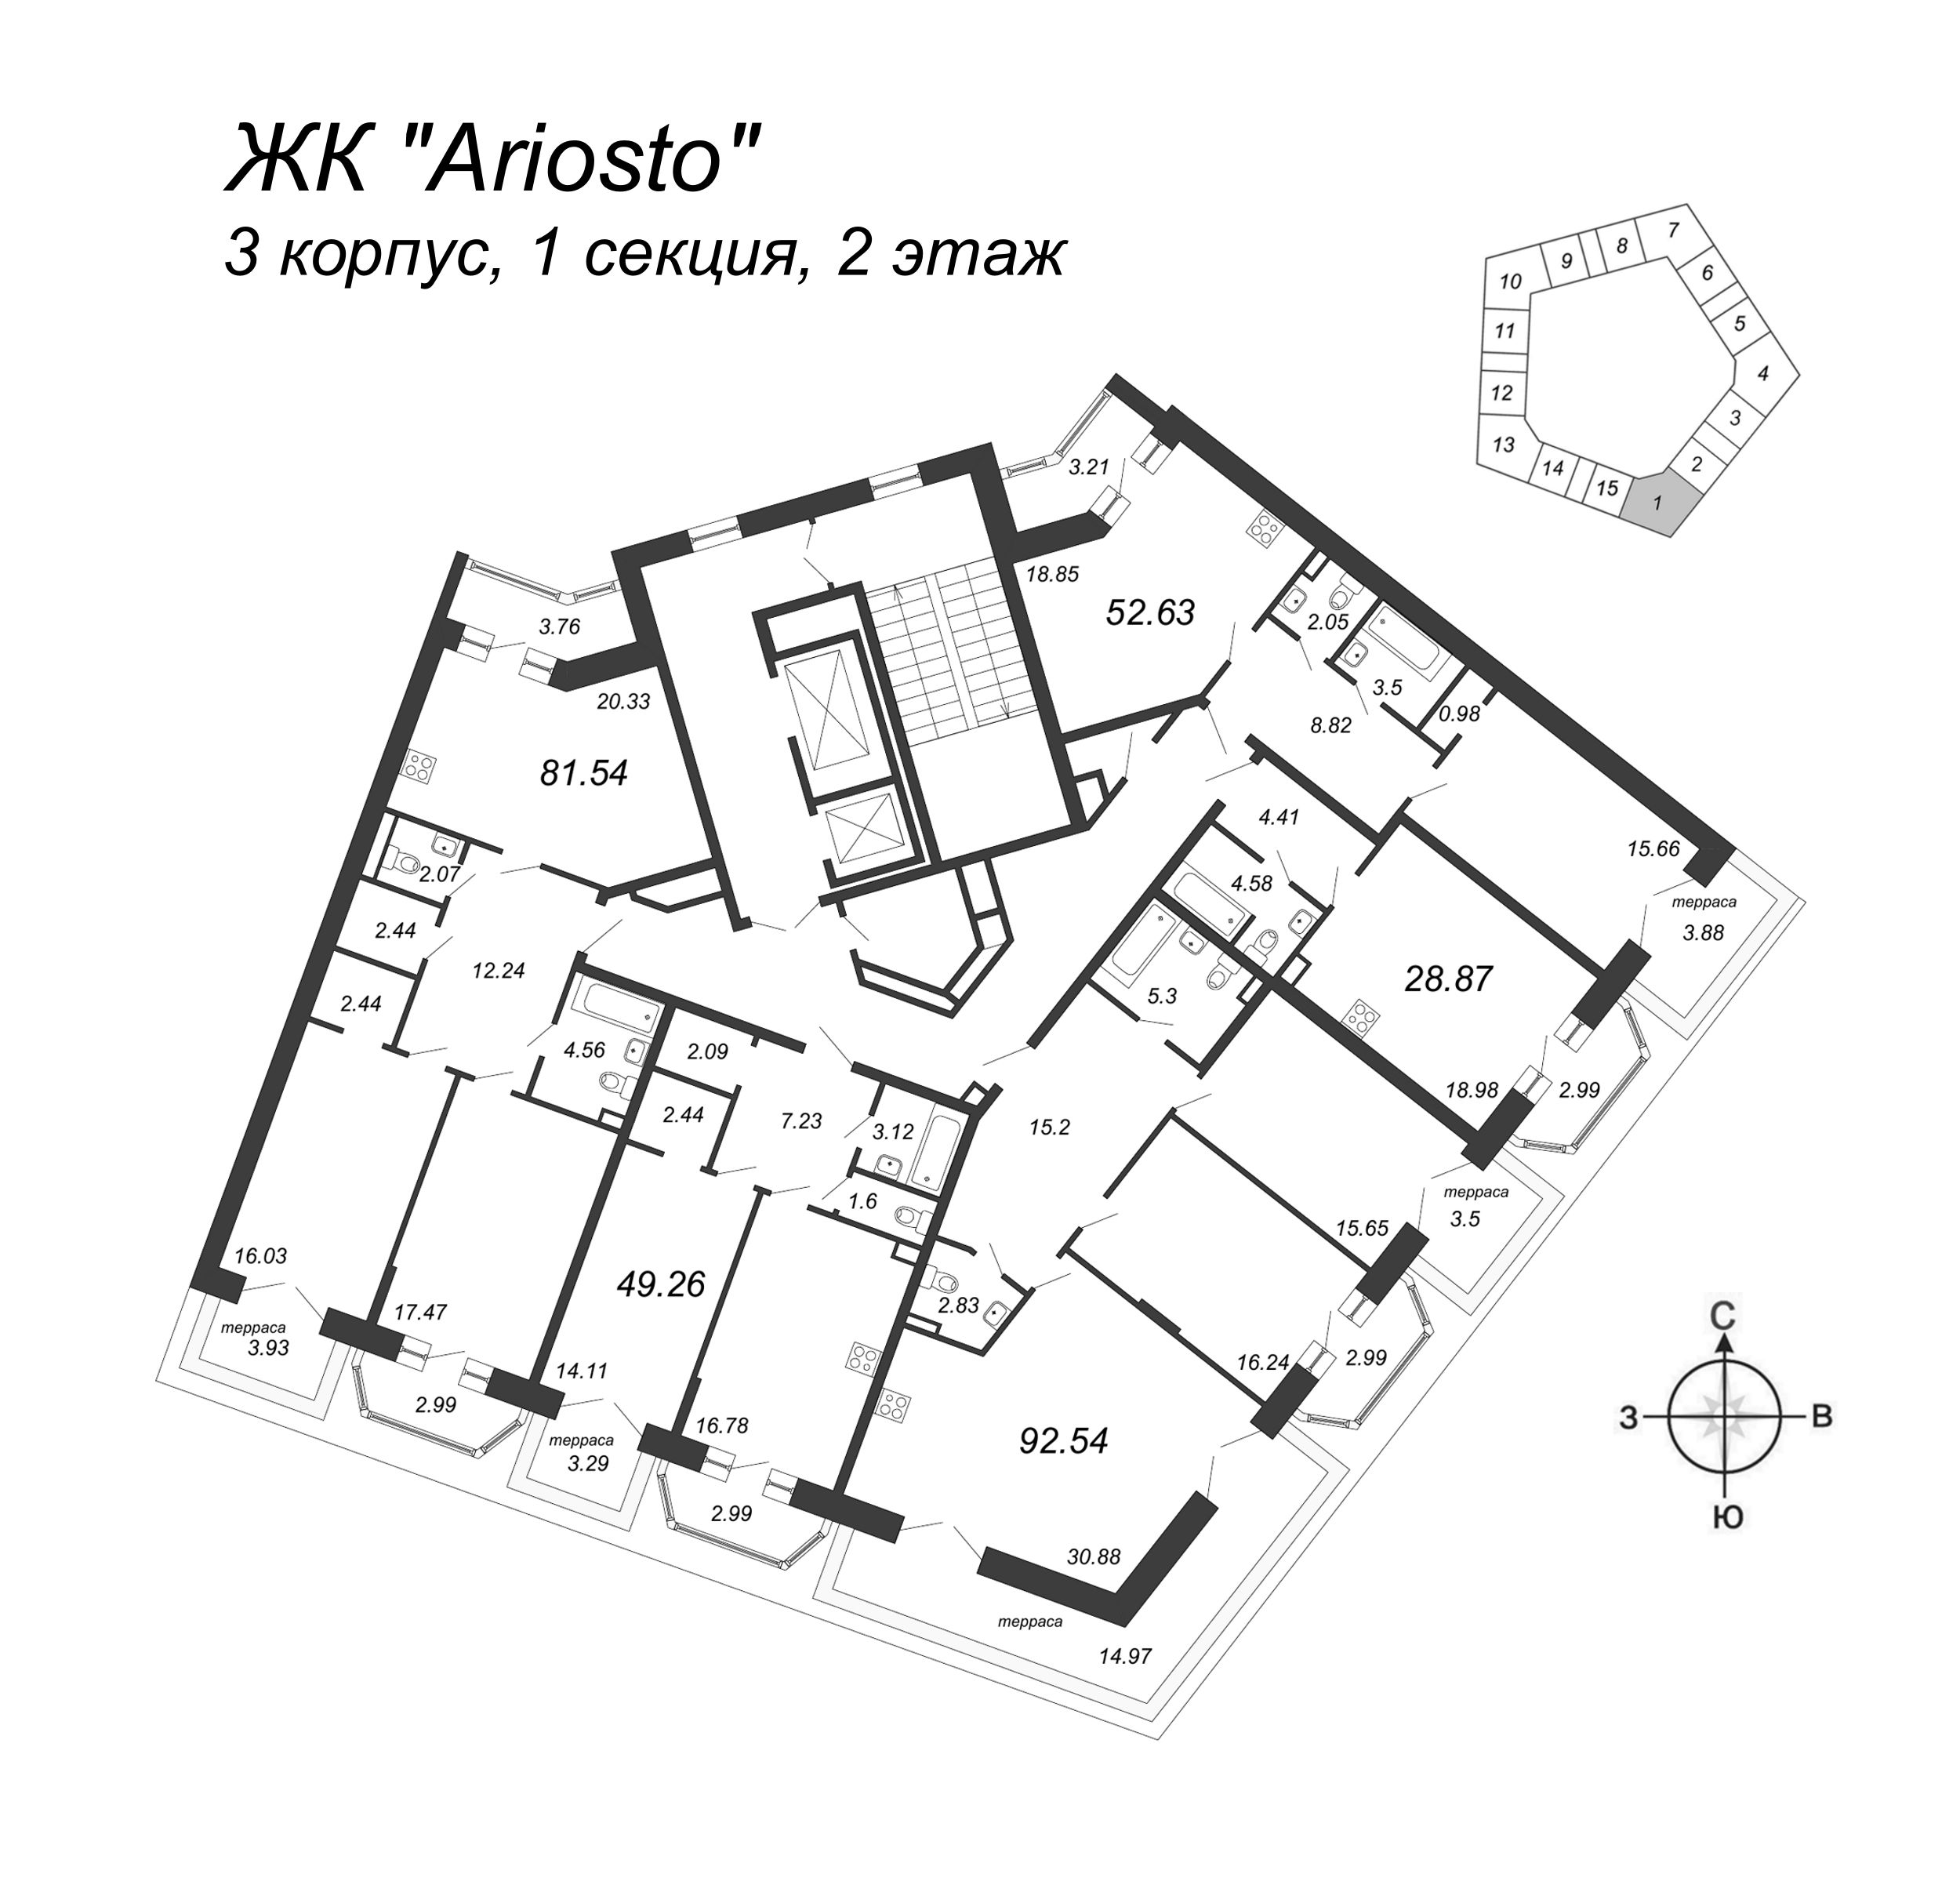 1-комнатная квартира, 49.26 м² в ЖК "Ariosto" - планировка этажа